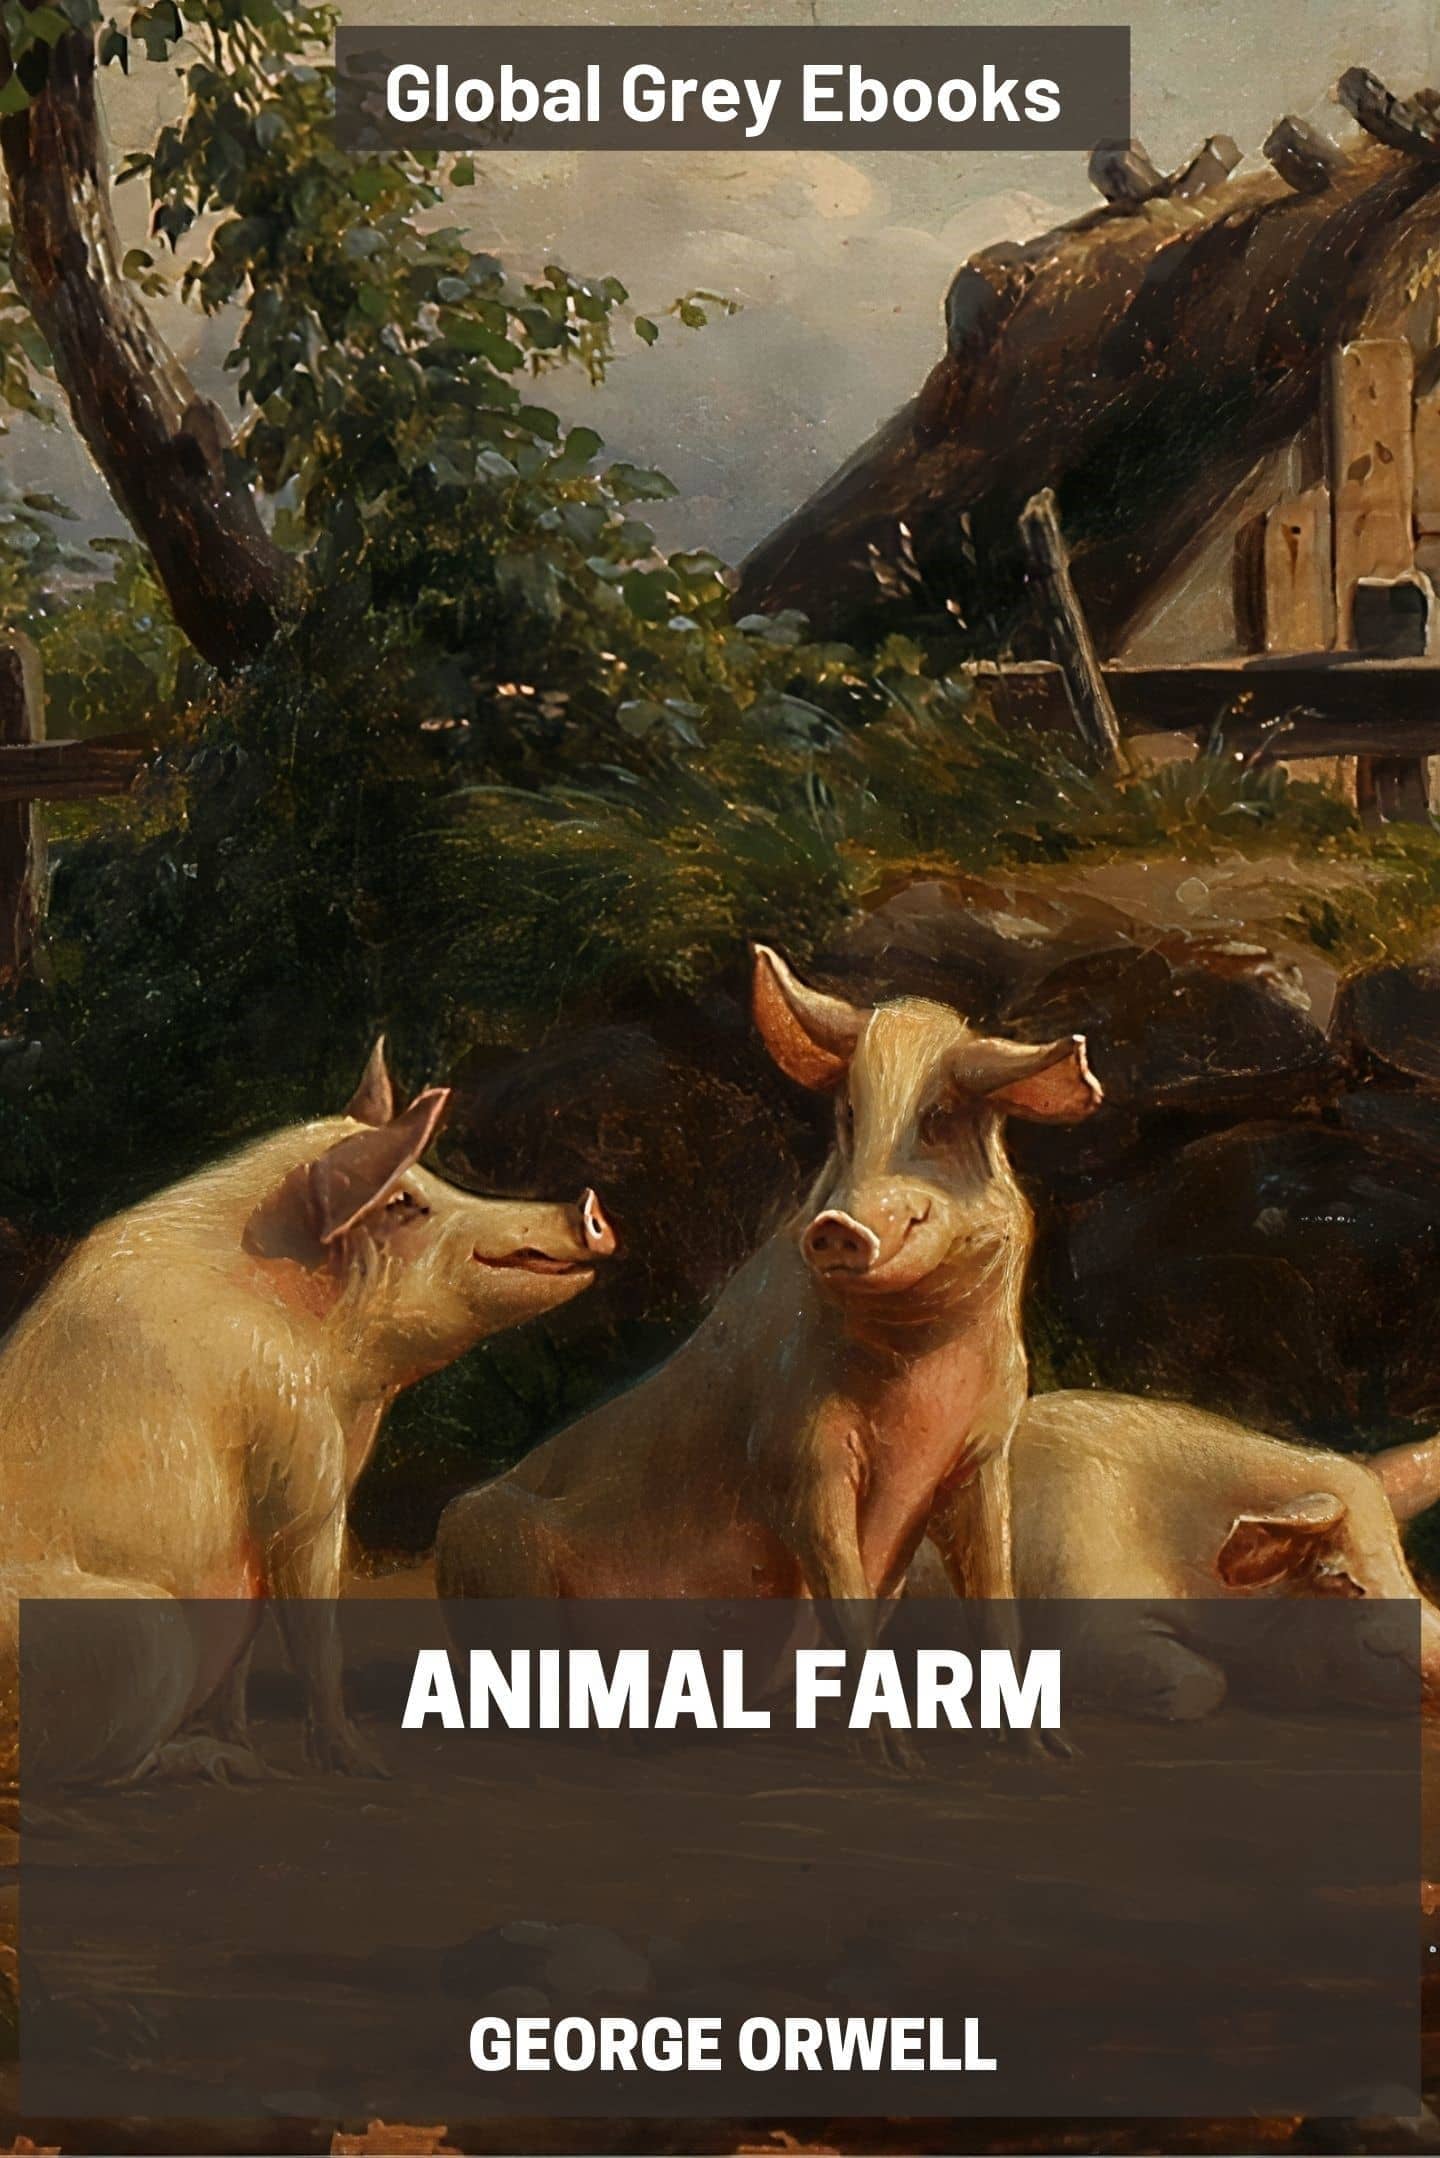 Animal Farm by George Orwell - Free ebook - Global Grey ebooks